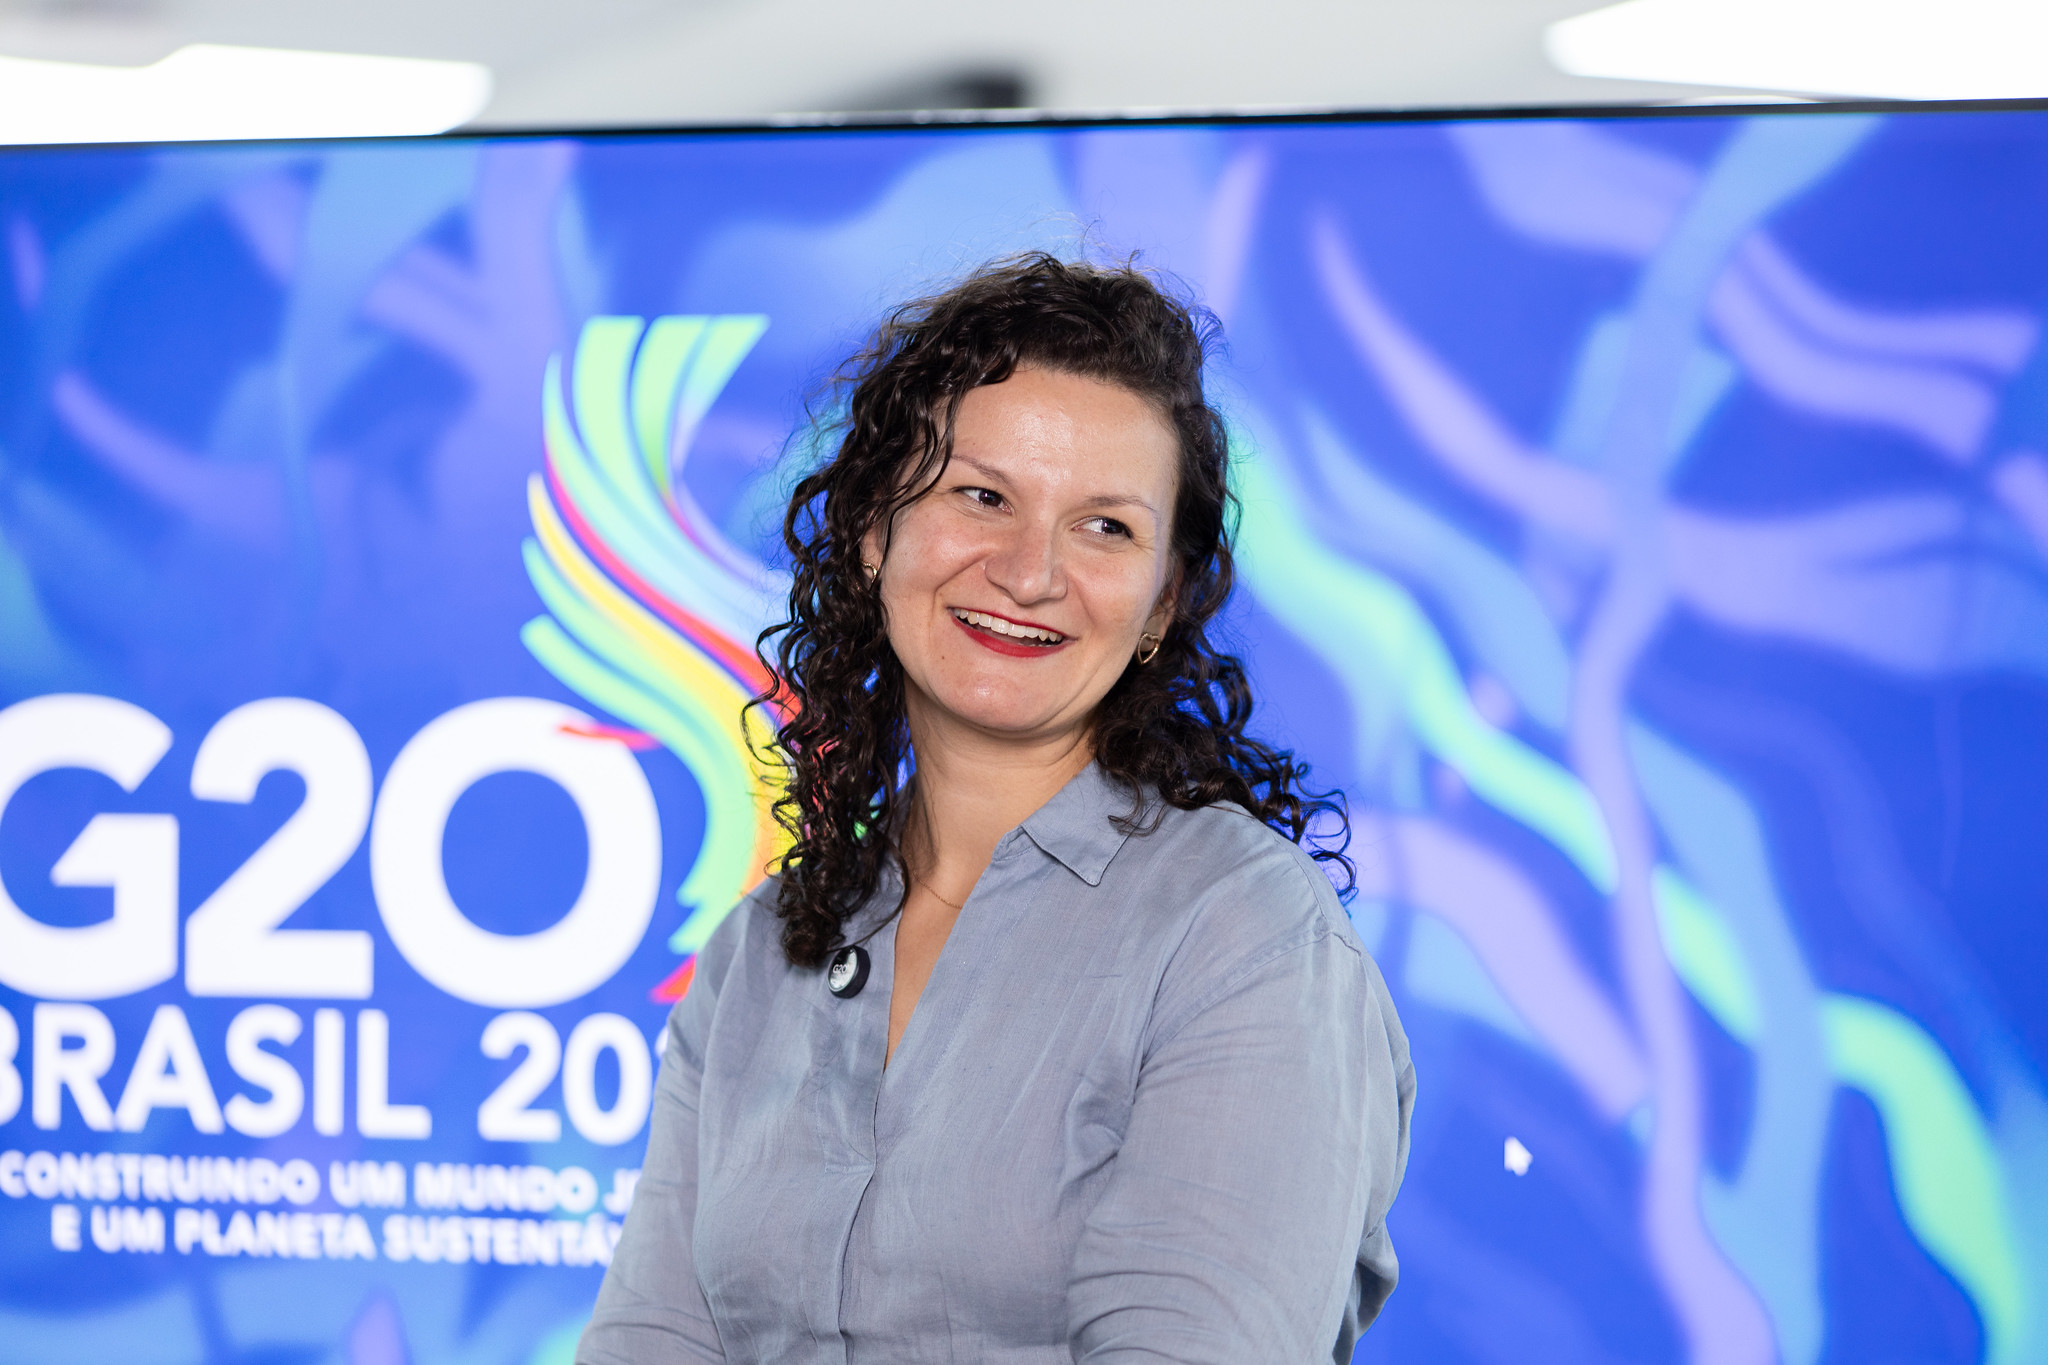 Celeste Badaró, coordenadora do GT de Desenvolvimento do G20, contou que a iniciativa voluntária do Brasil de um ODS voltado para a promoção da igualdade étnico-racial foi bem recebida pelos países-membros | Fofo: Audiovisual G20 Brasil